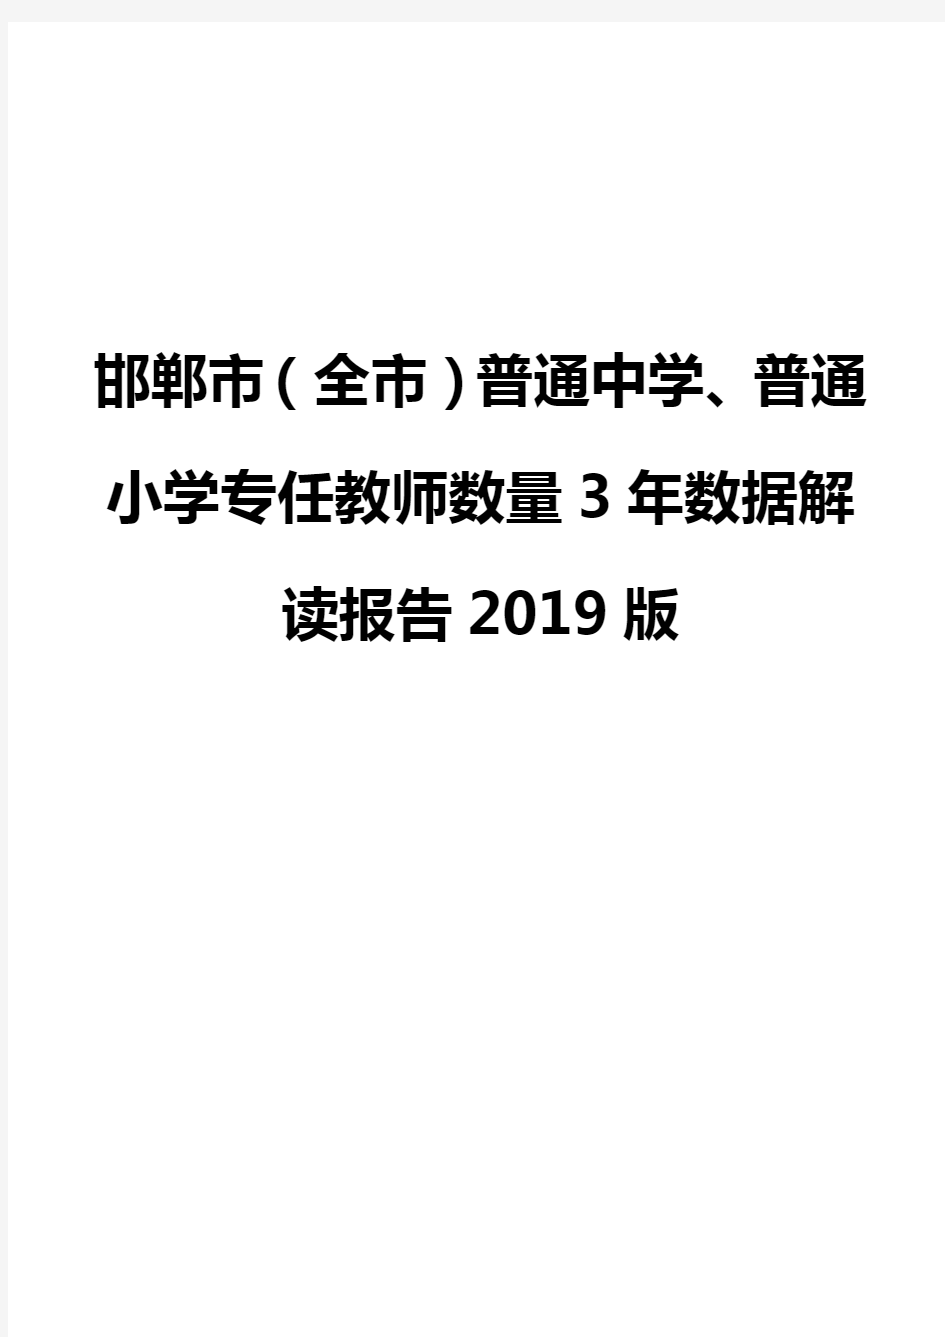 邯郸市(全市)普通中学、普通小学专任教师数量3年数据解读报告2019版